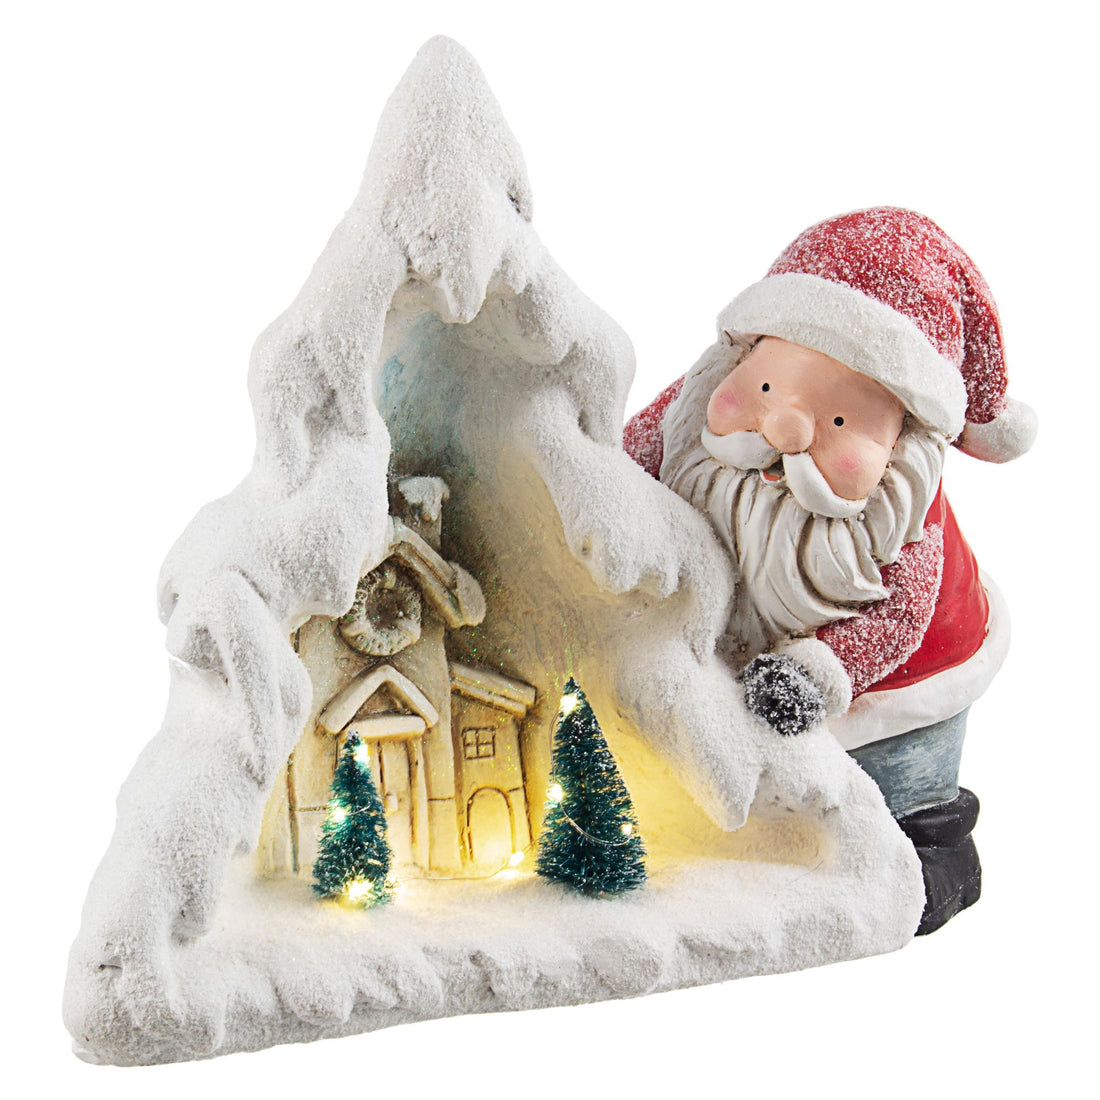 BIZZOTTO - Babbo Natale Wintry Casetta LED Decorazione Natalizia 34 cm